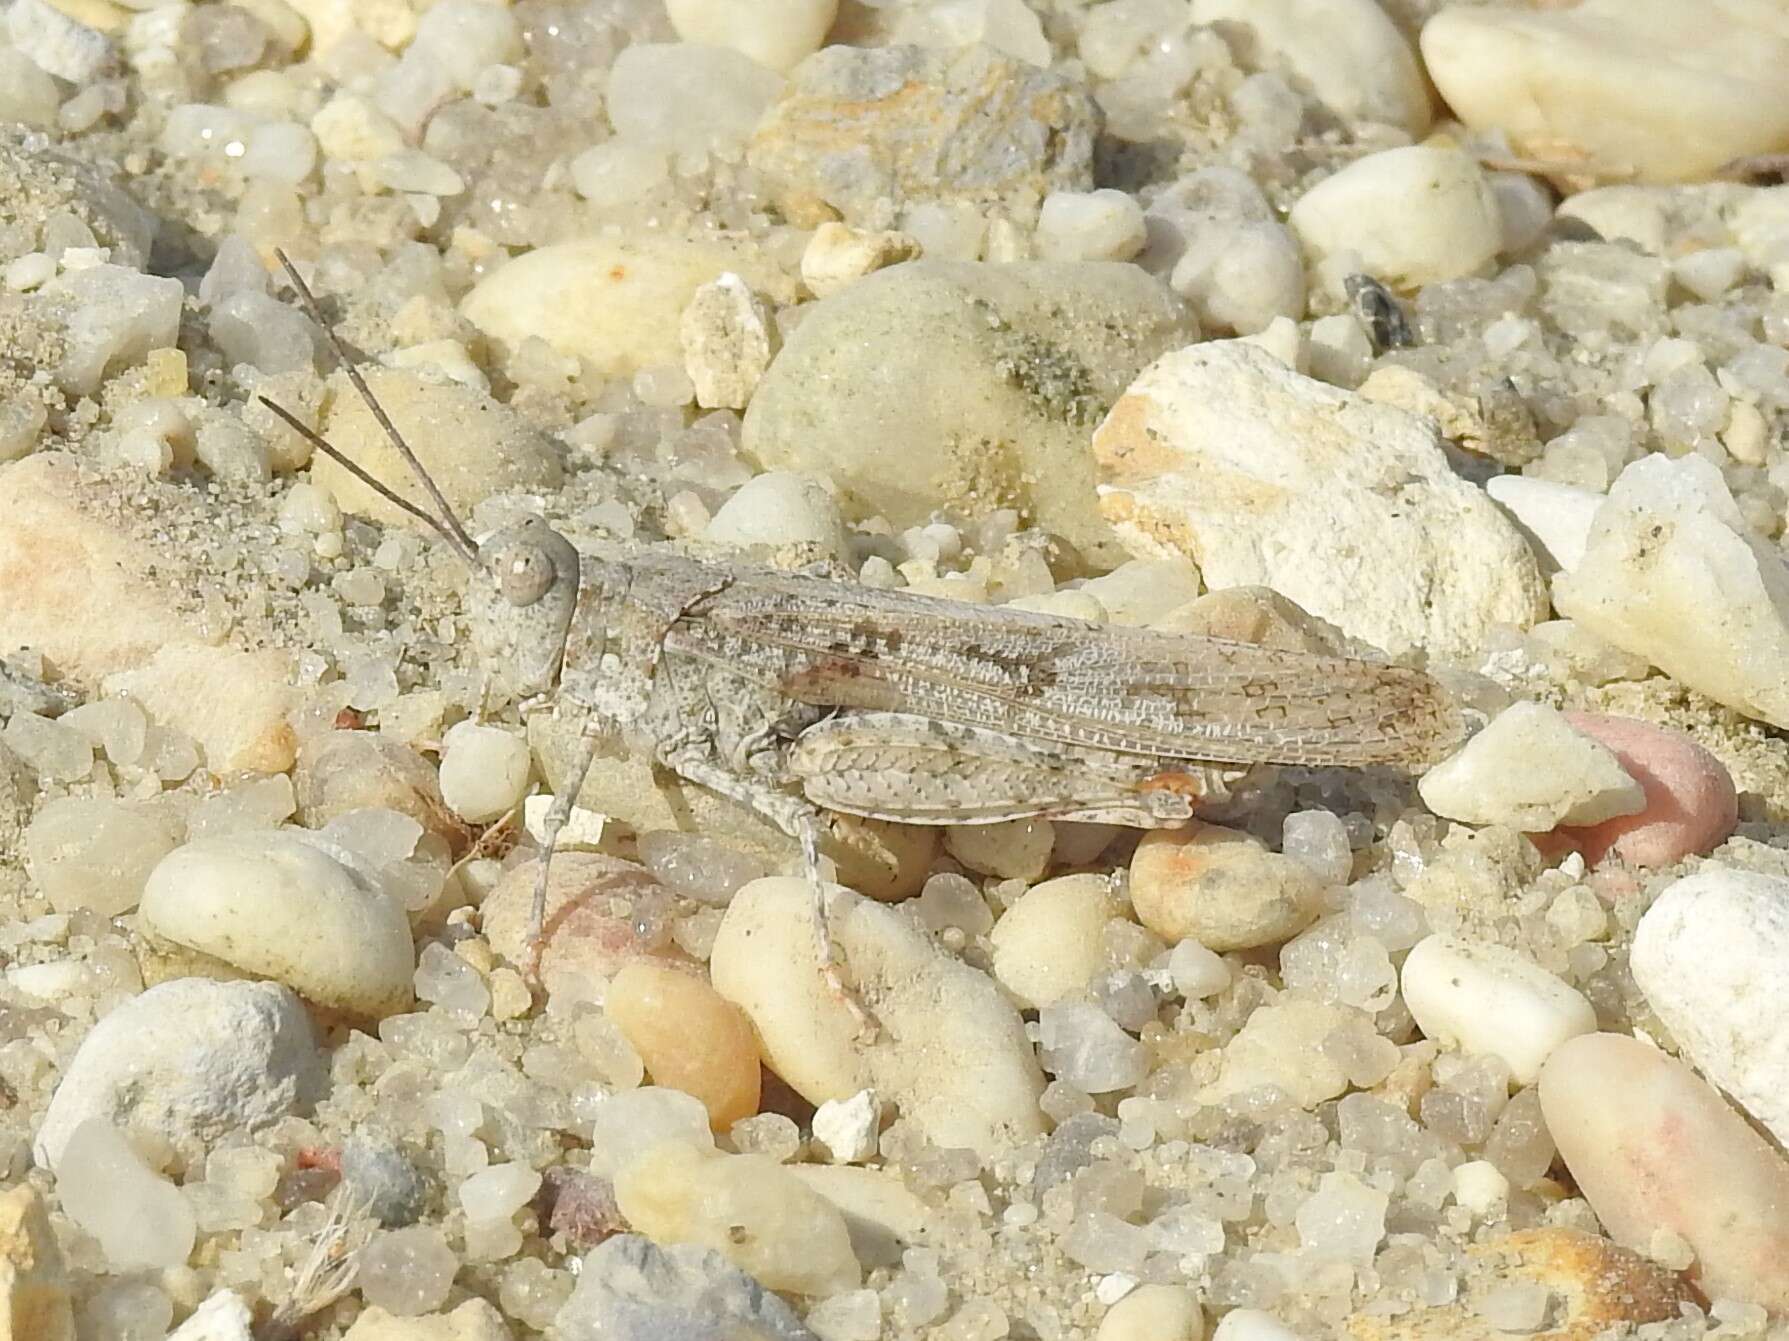 Image of Seaside Grasshopper